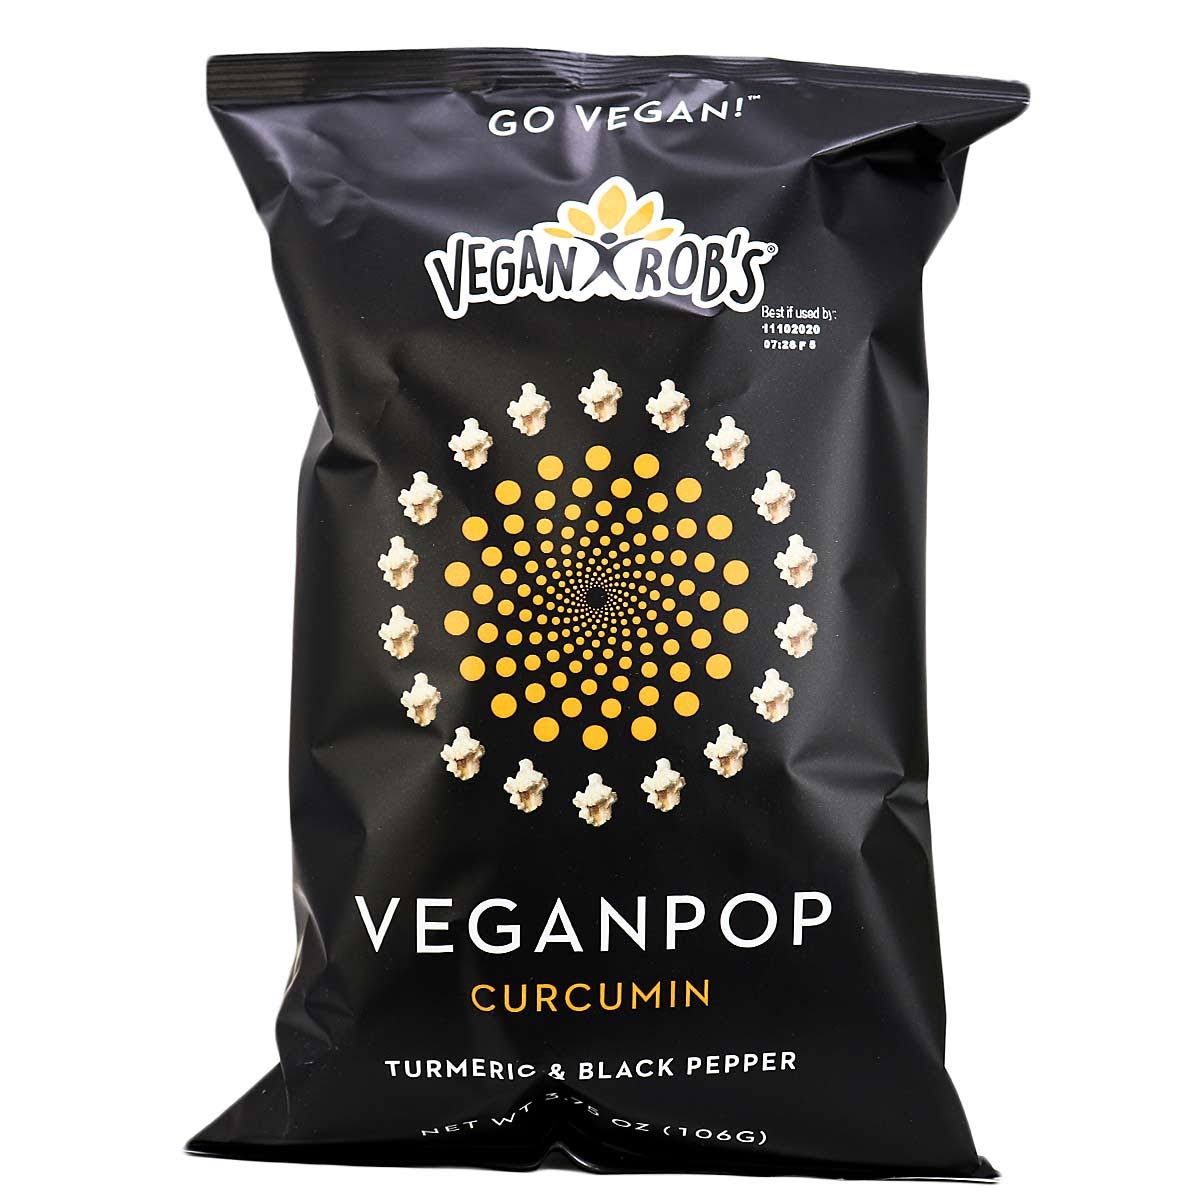 Vegan Rob's Veganpop Curcumin Turmeric & Black Pepper, 106g